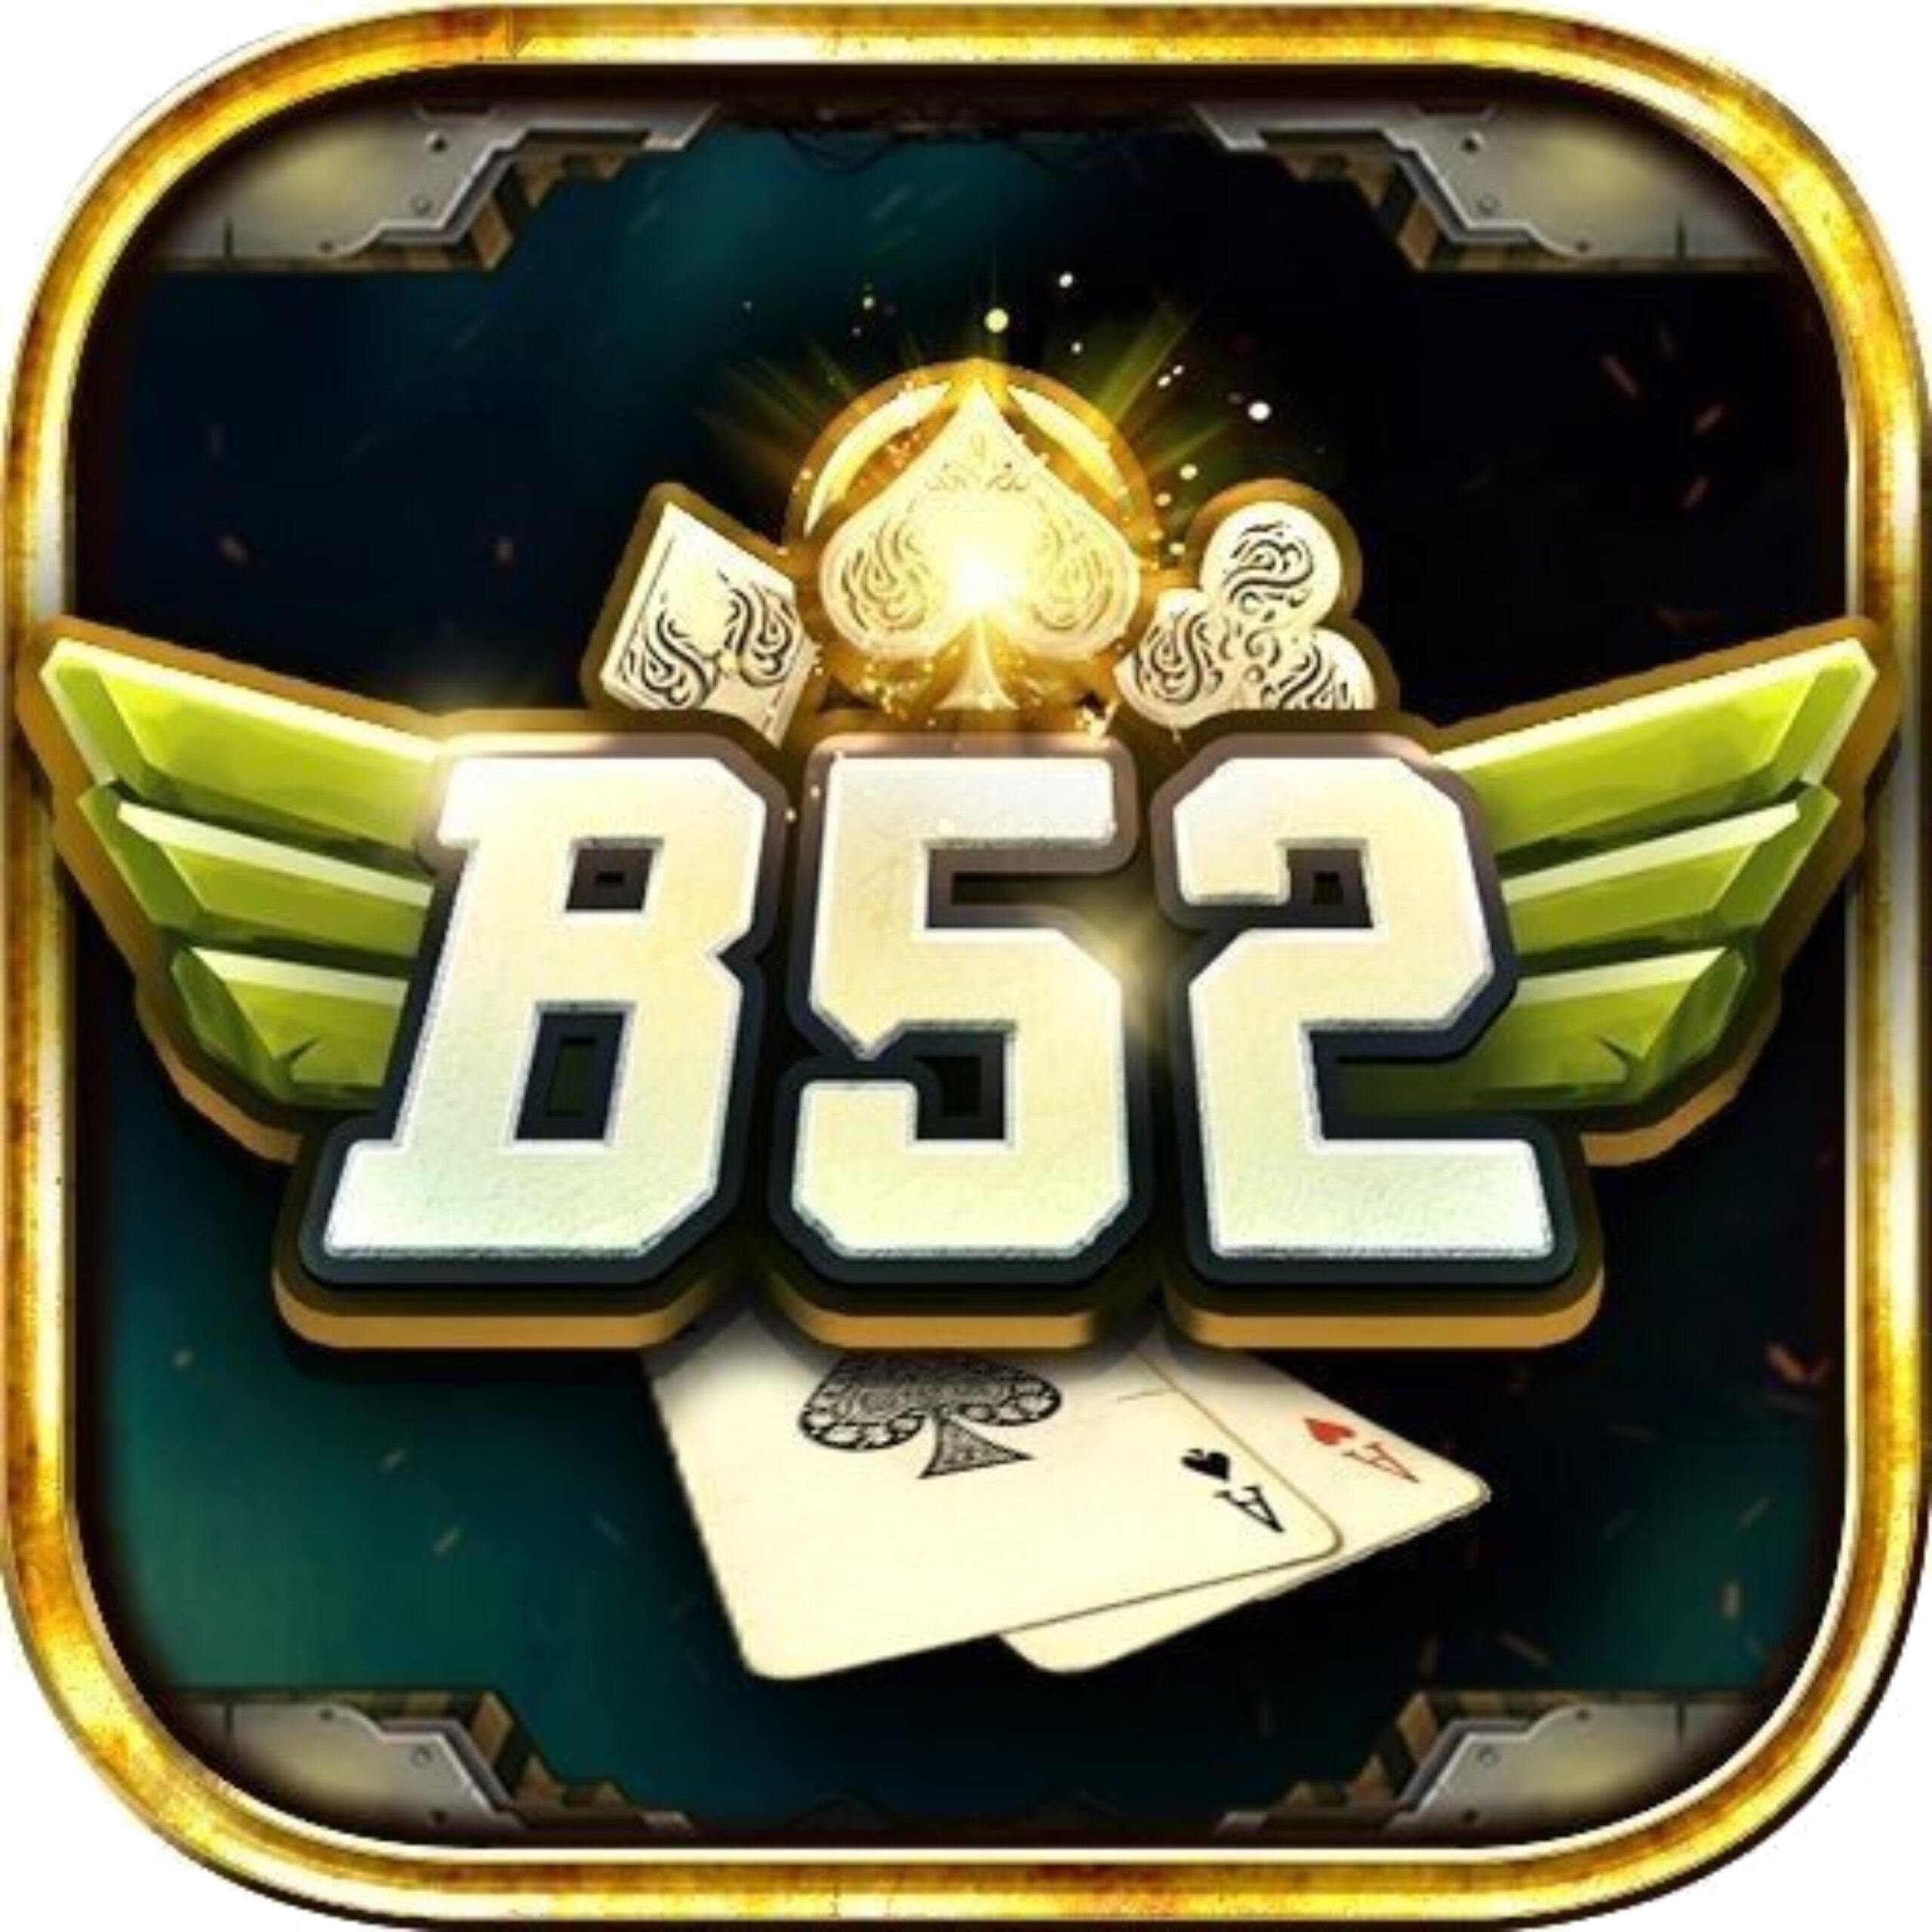 B52 Club – Chiến ngay với game bài bom tấn B52 – Tải B52.Win APK, IOS, Web